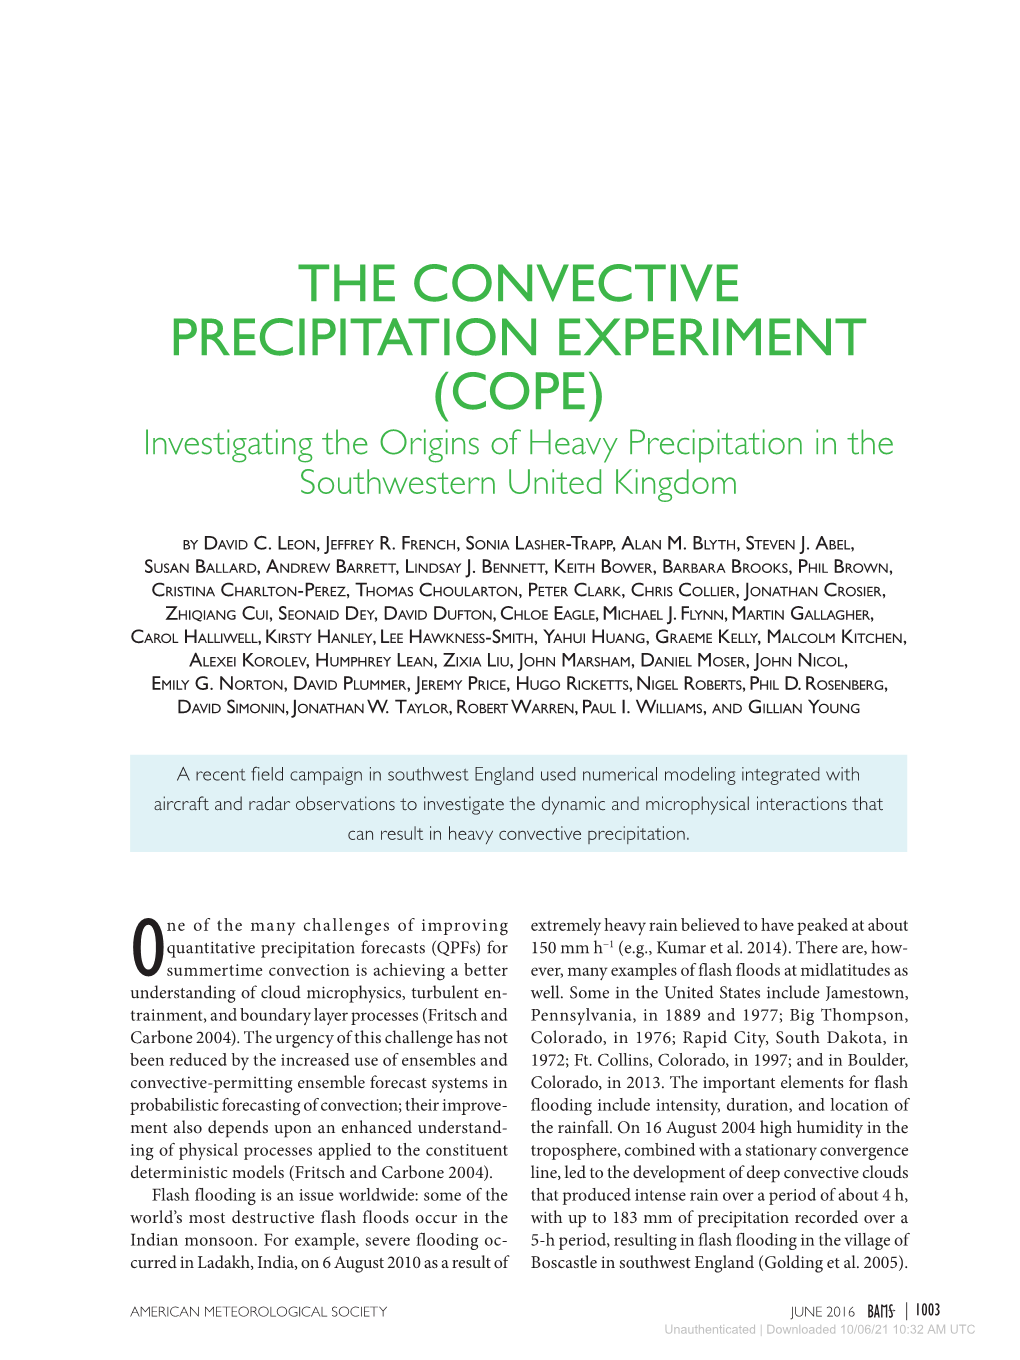 THE CONVECTIVE PRECIPITATION EXPERIMENT (COPE) Investigating the Origins of Heavy Precipitation in the Southwestern United Kingdom